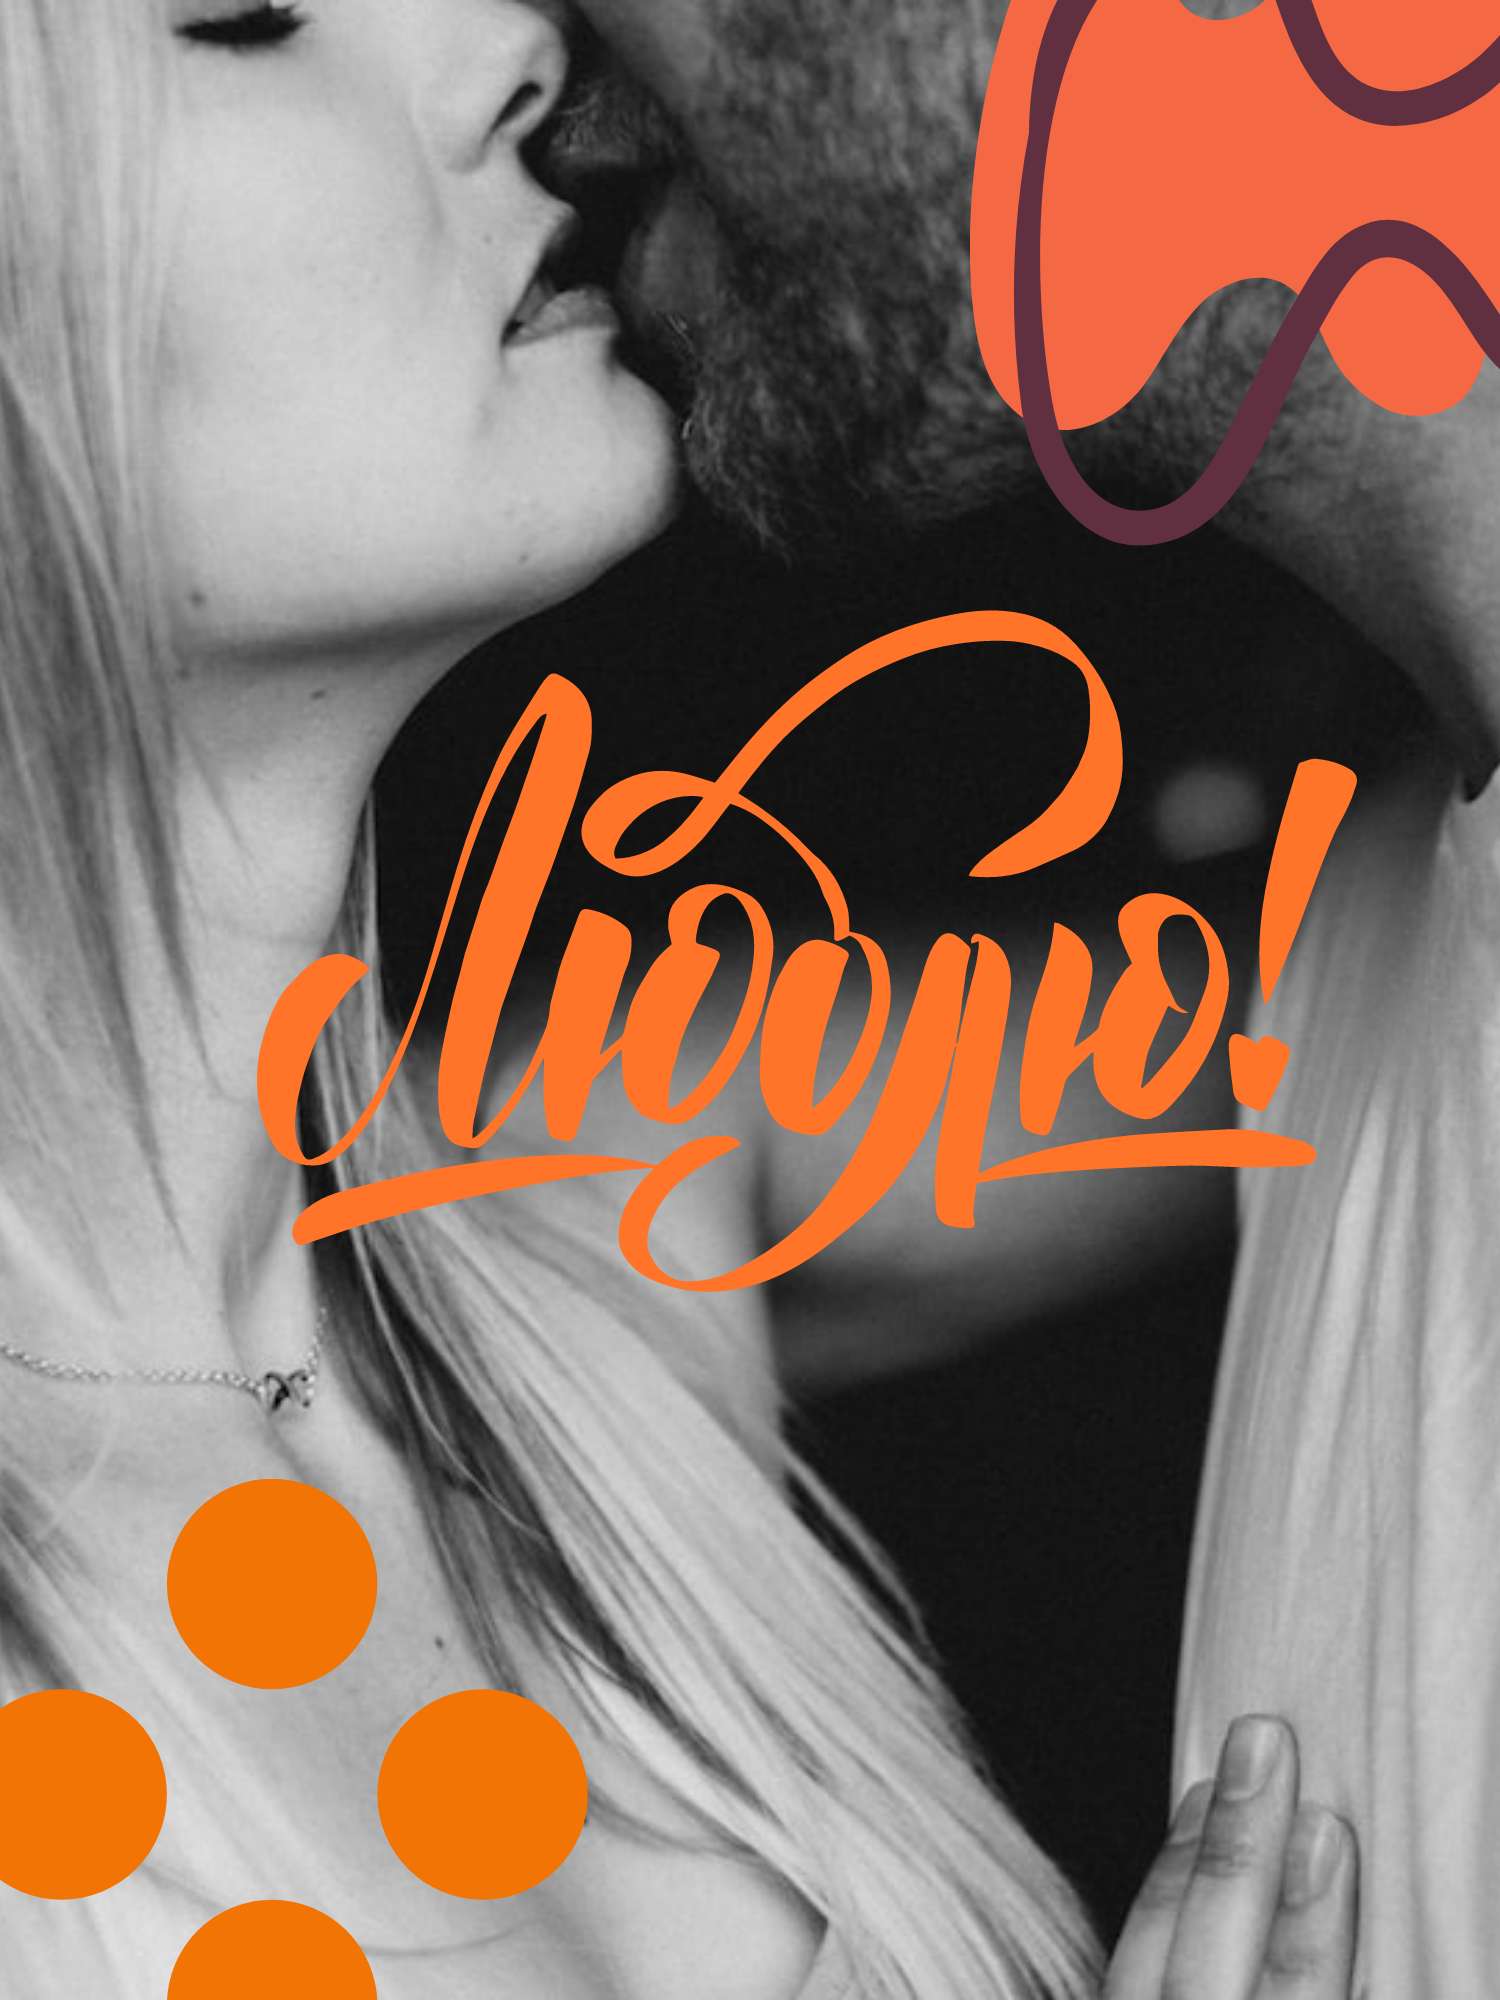 Эмоциональная открытка с признанием в любви с черно-белым фото на фоне и ярко-оранжевым текстом